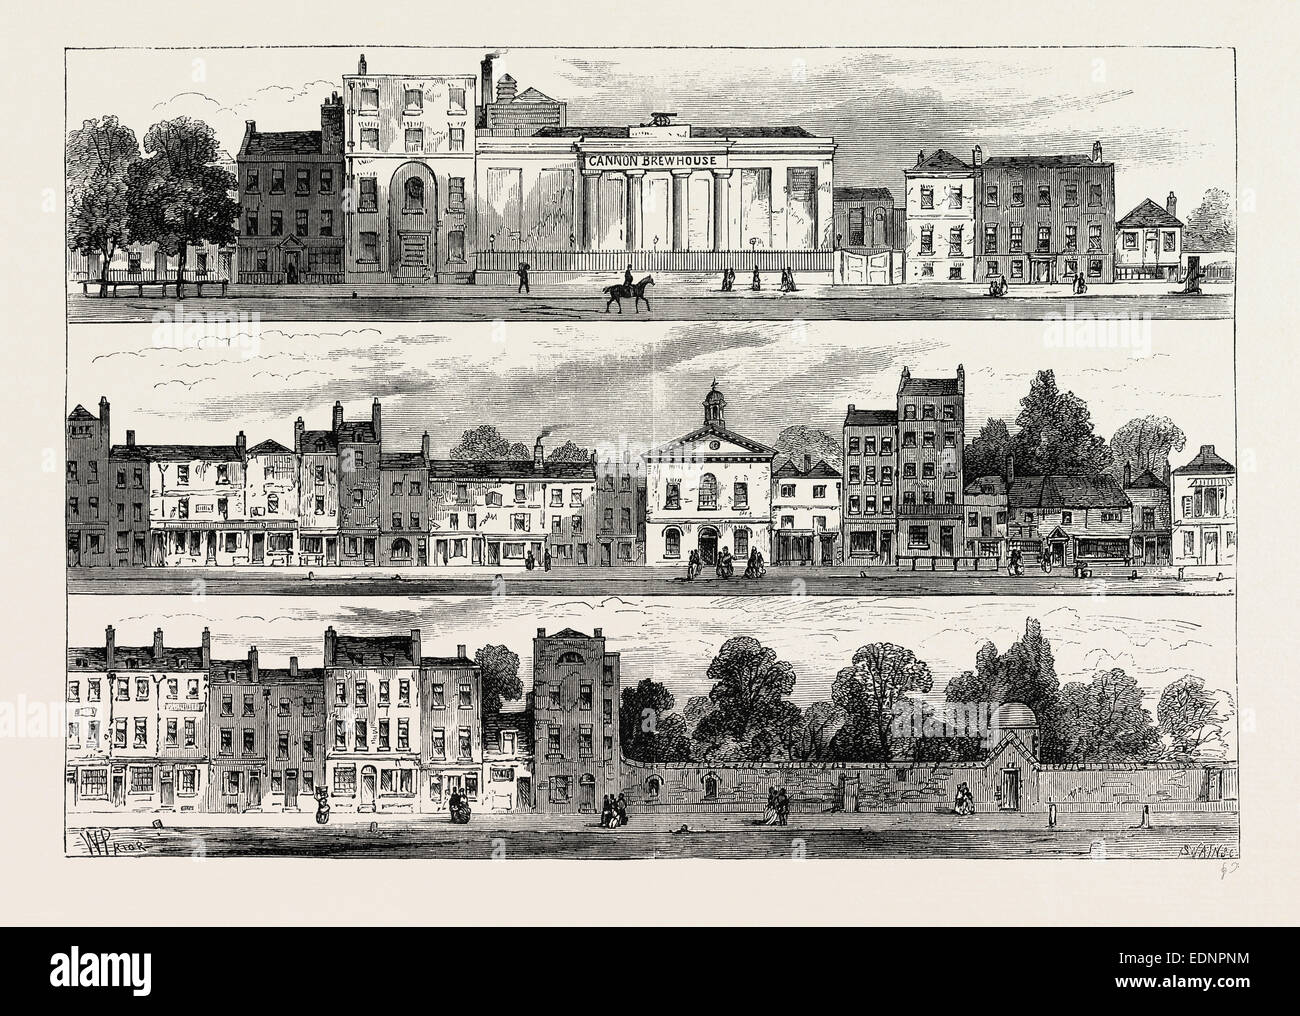 Le CÔTÉ NORD DE KNIGHTSBRIDGE EN 1820, À PARTIR DE LA BRASSERIE CANNON à Hyde Park Corner. Londres, Royaume-Uni, la gravure du xixe siècle Banque D'Images